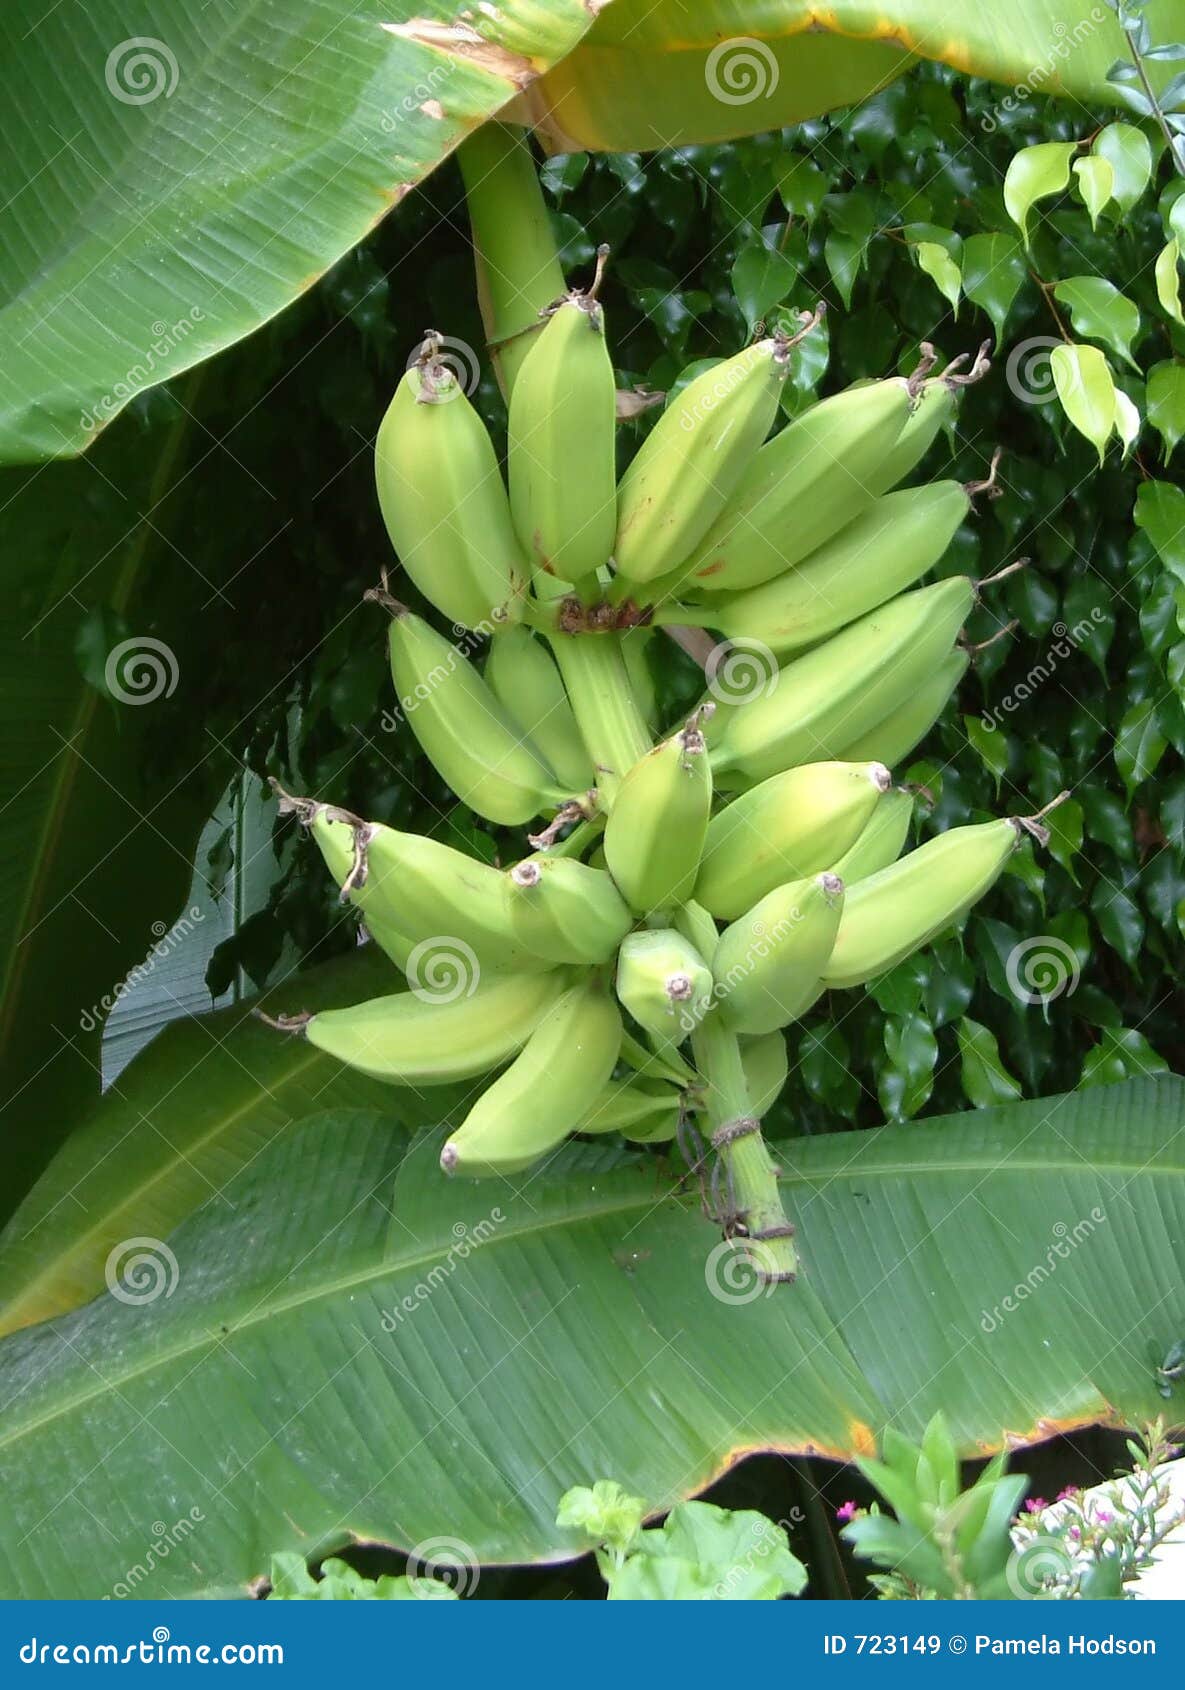 香蕉树与香蕉花的图片-千叶网